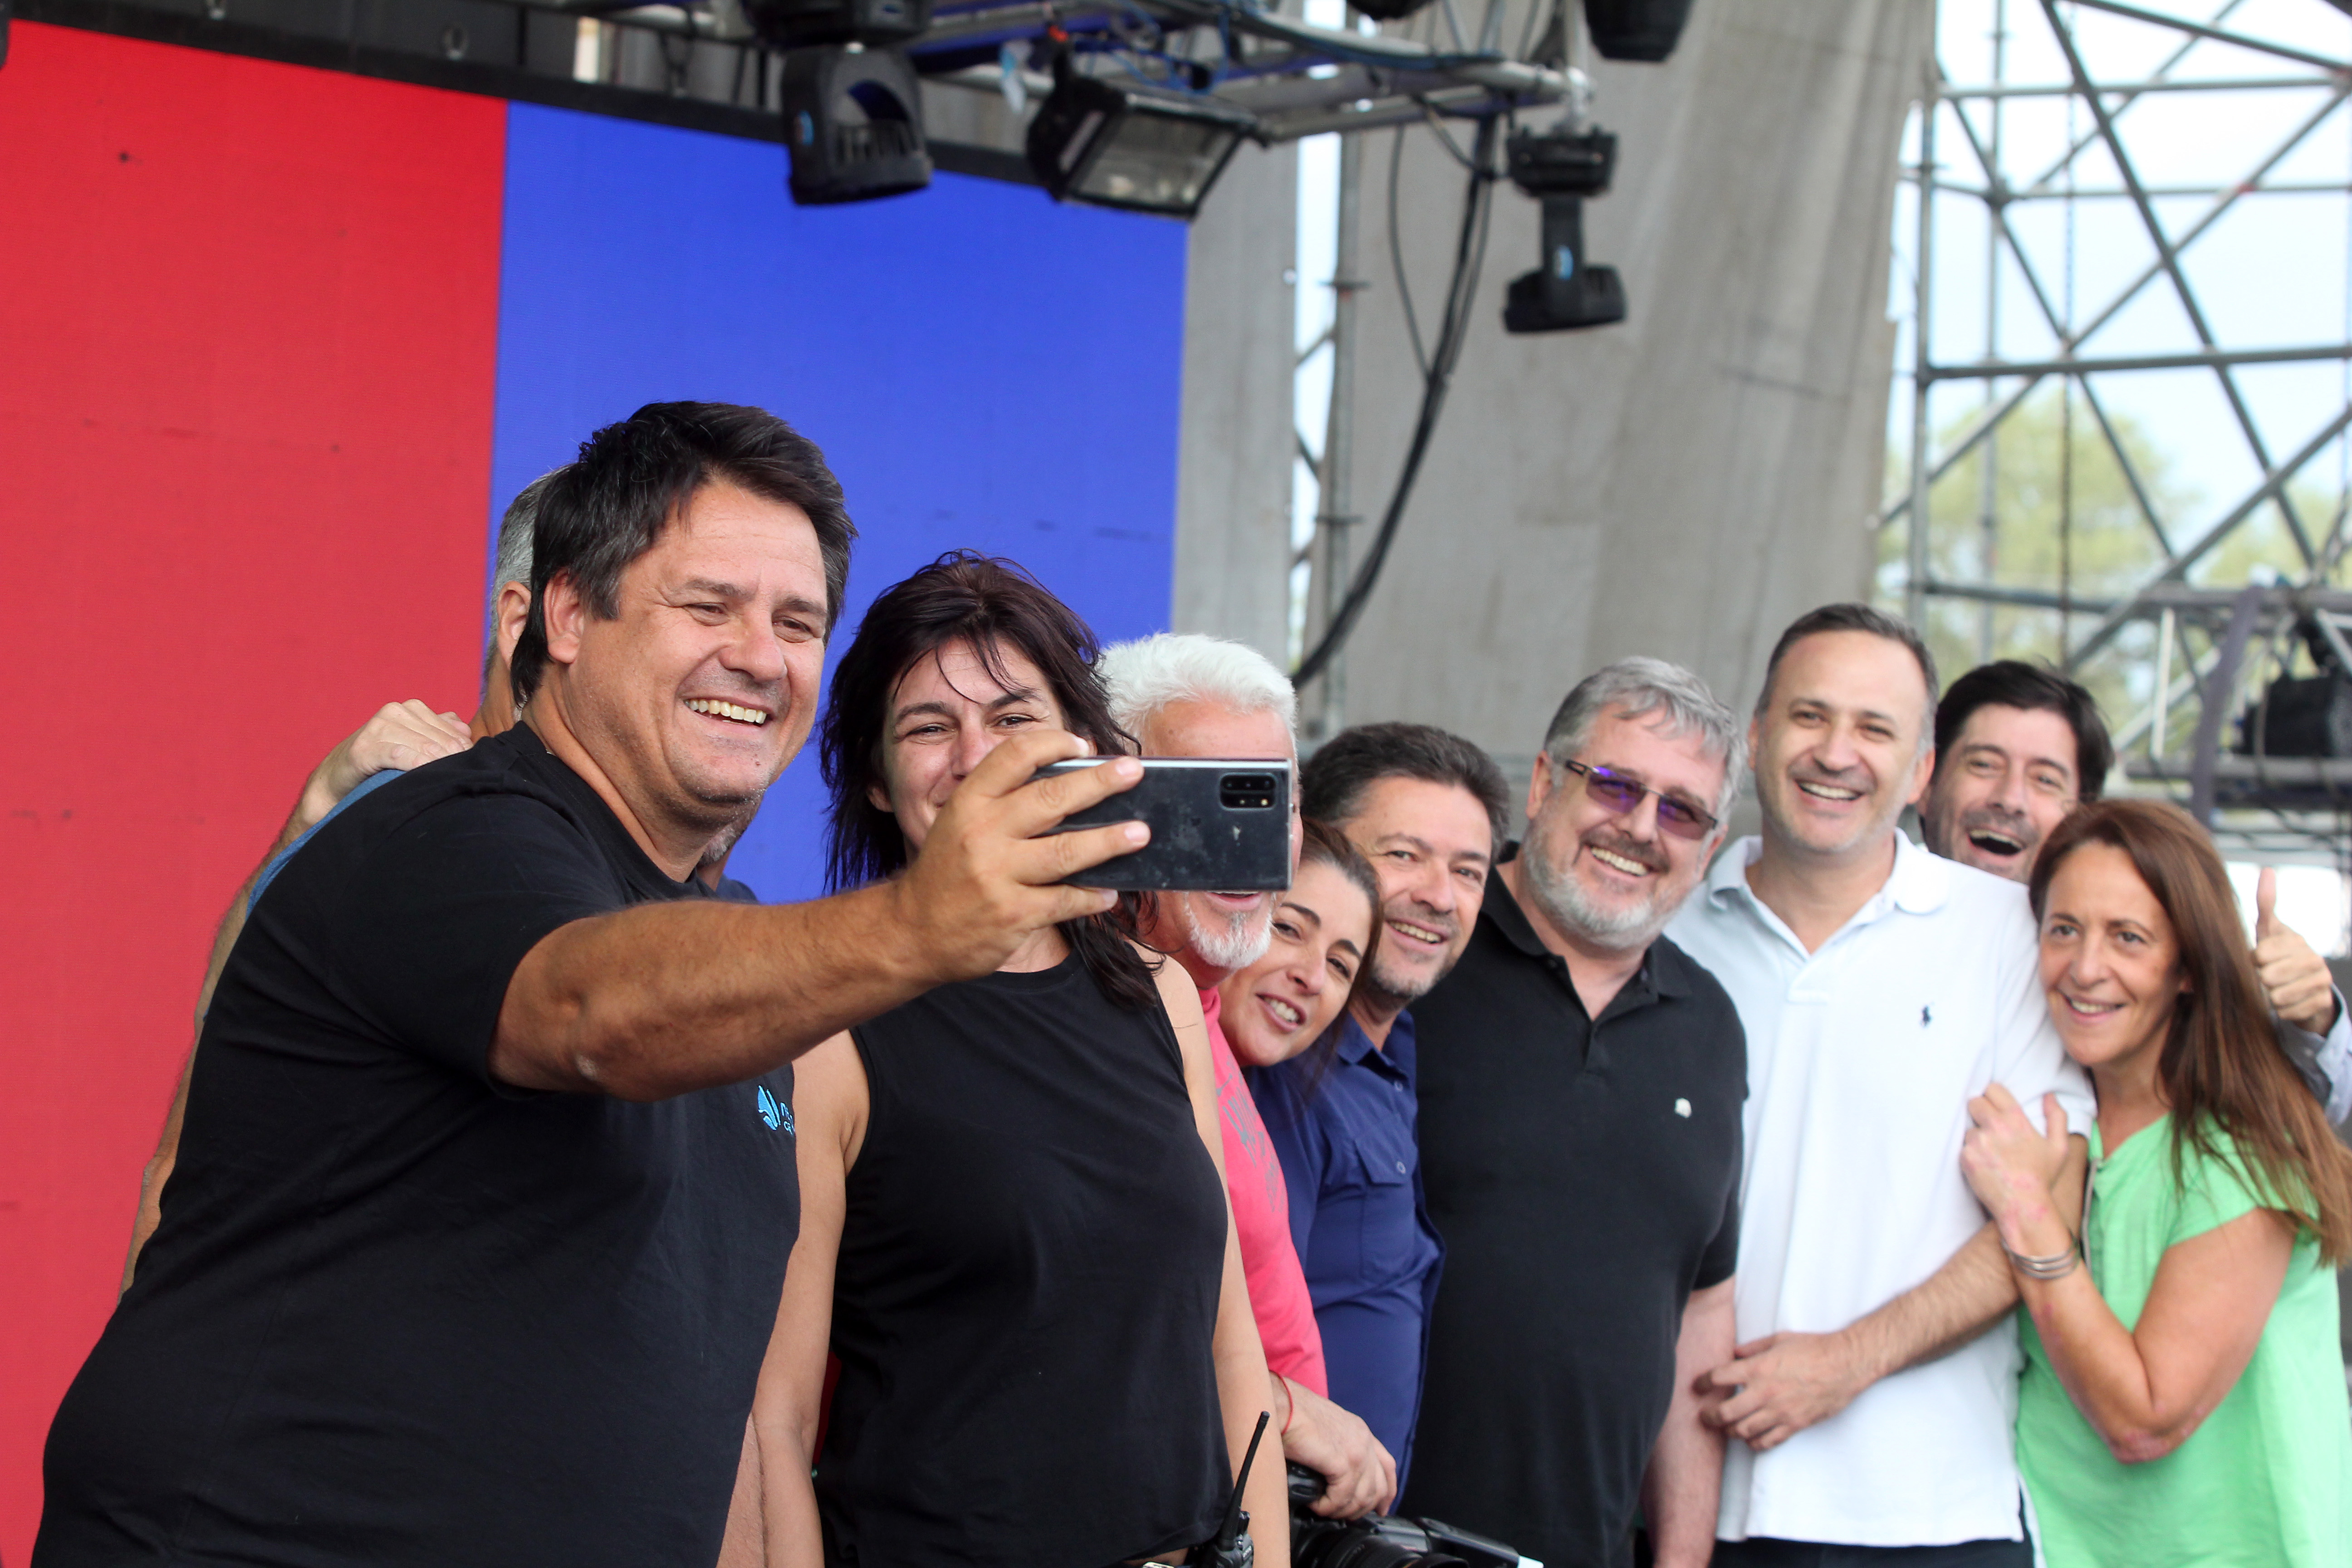 La selfie del intendente Gaido en el escenario mayor. Foto: Oscar Livera